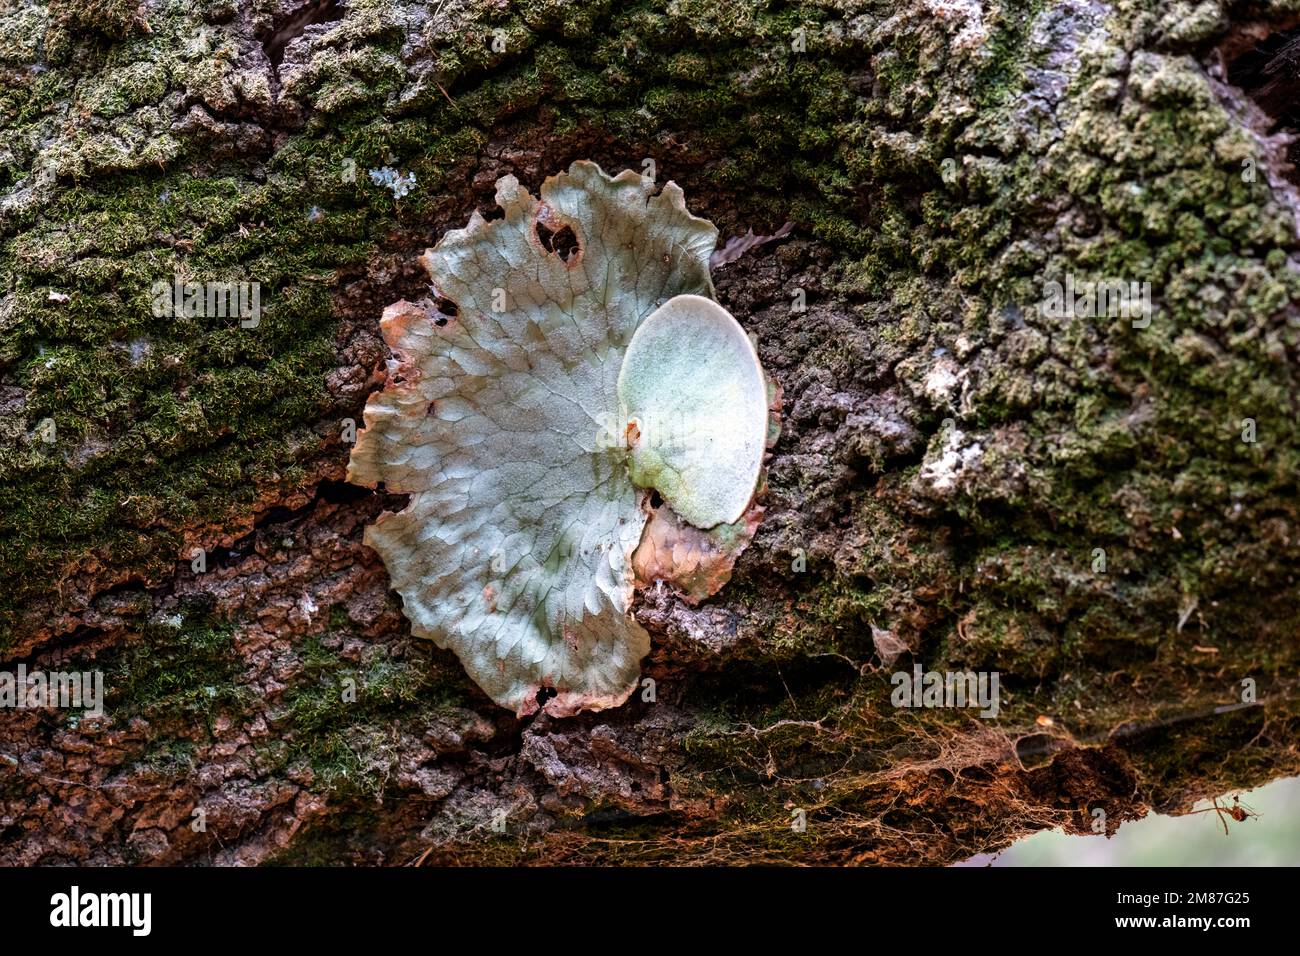 Un lichen foliaire non identifié qui pousse sur un arbre dans un parc de Sydney, Nouvelle-Galles du Sud, Australie (photo de Tara Chand Malhotra) Banque D'Images